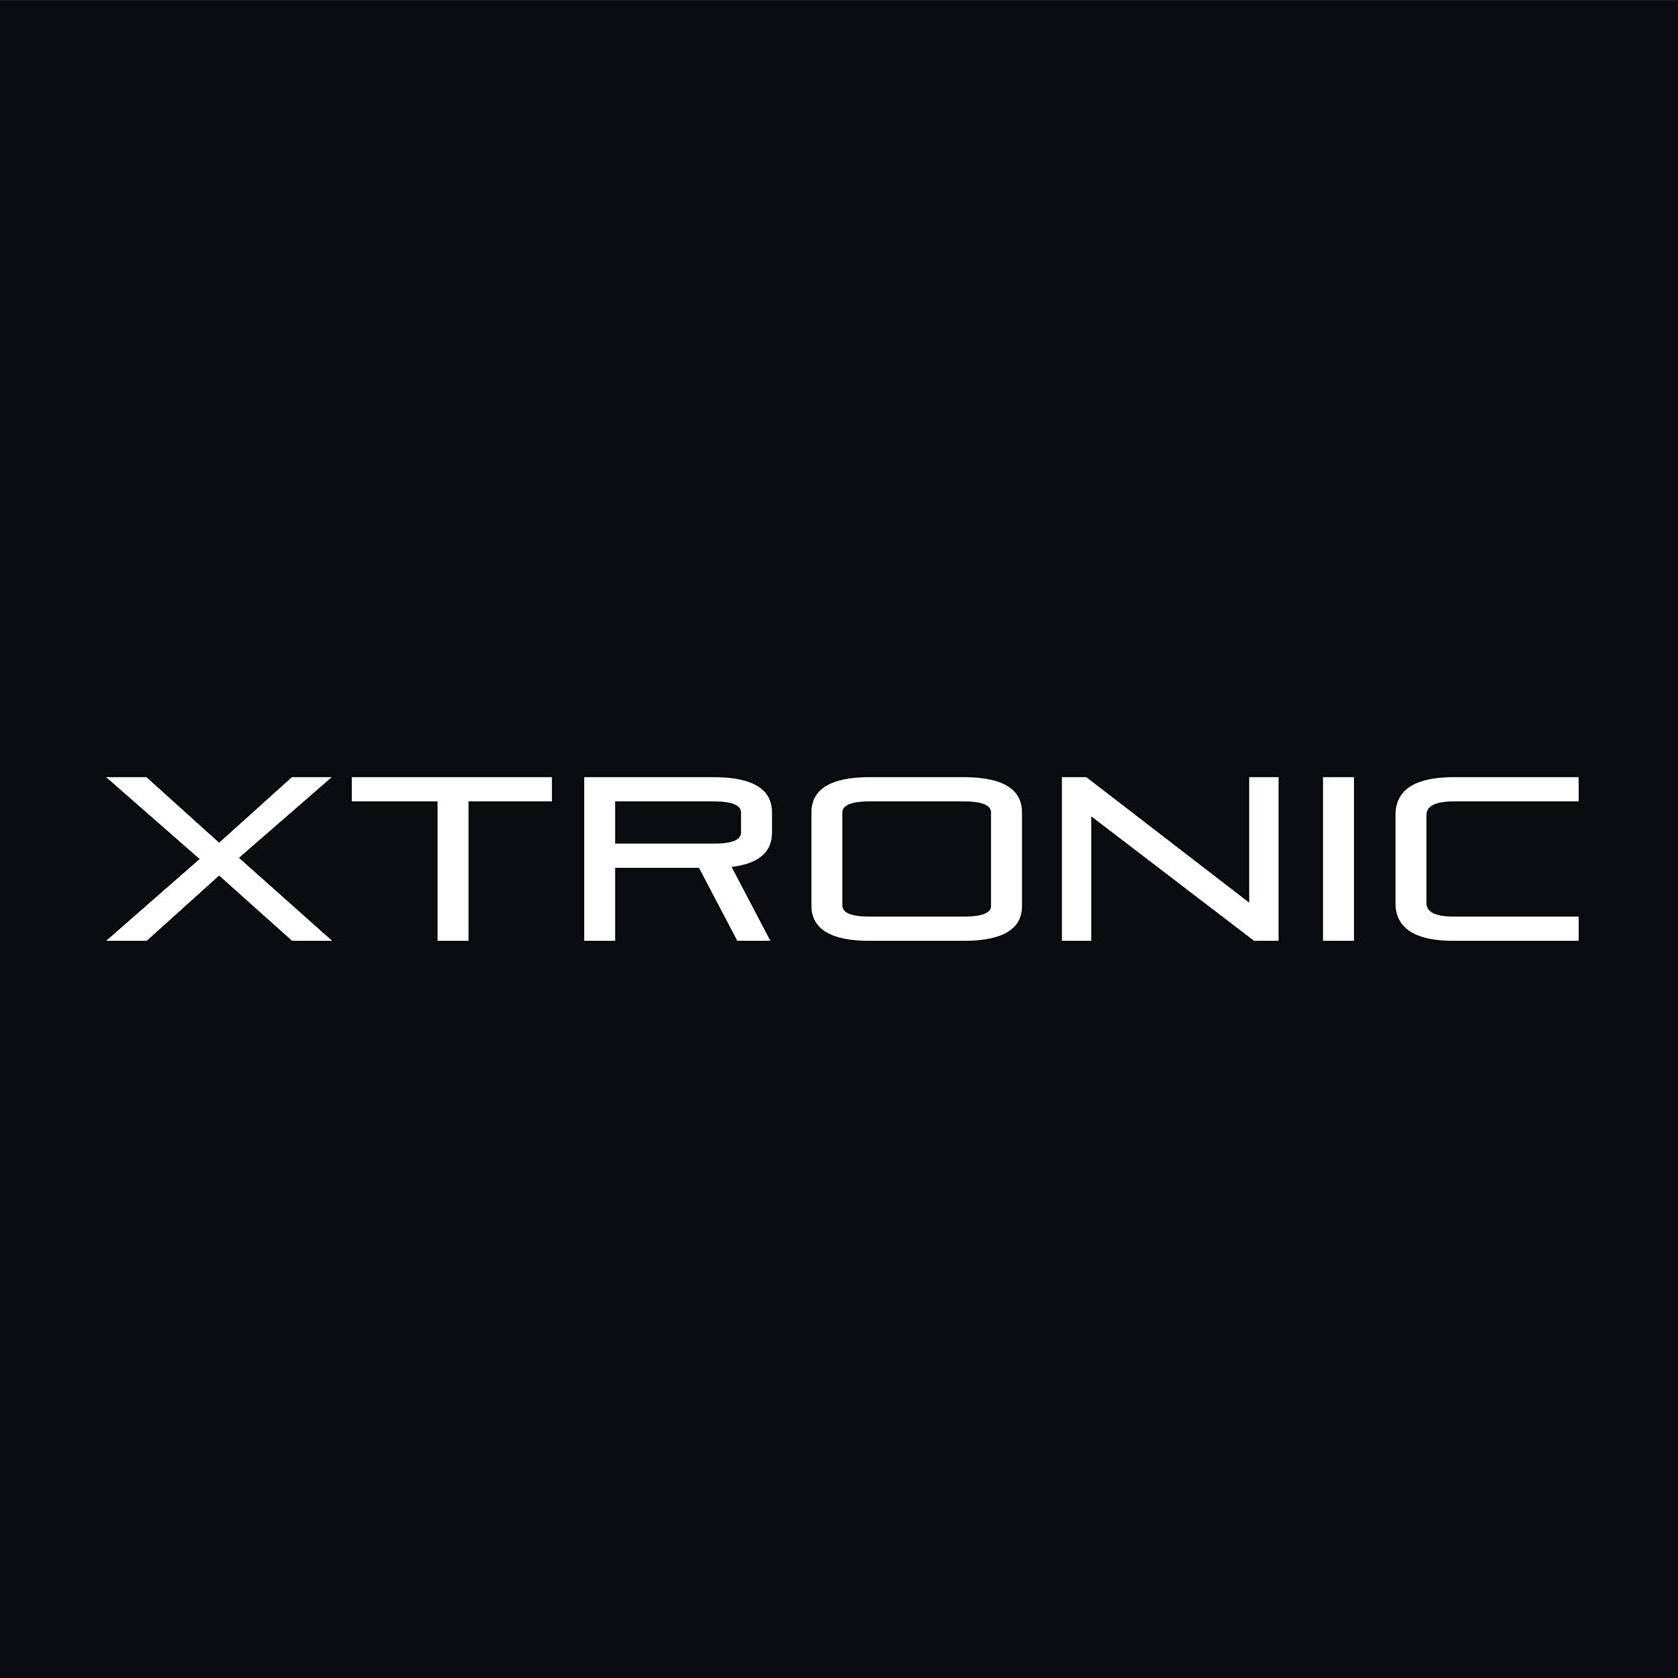 Xtronic